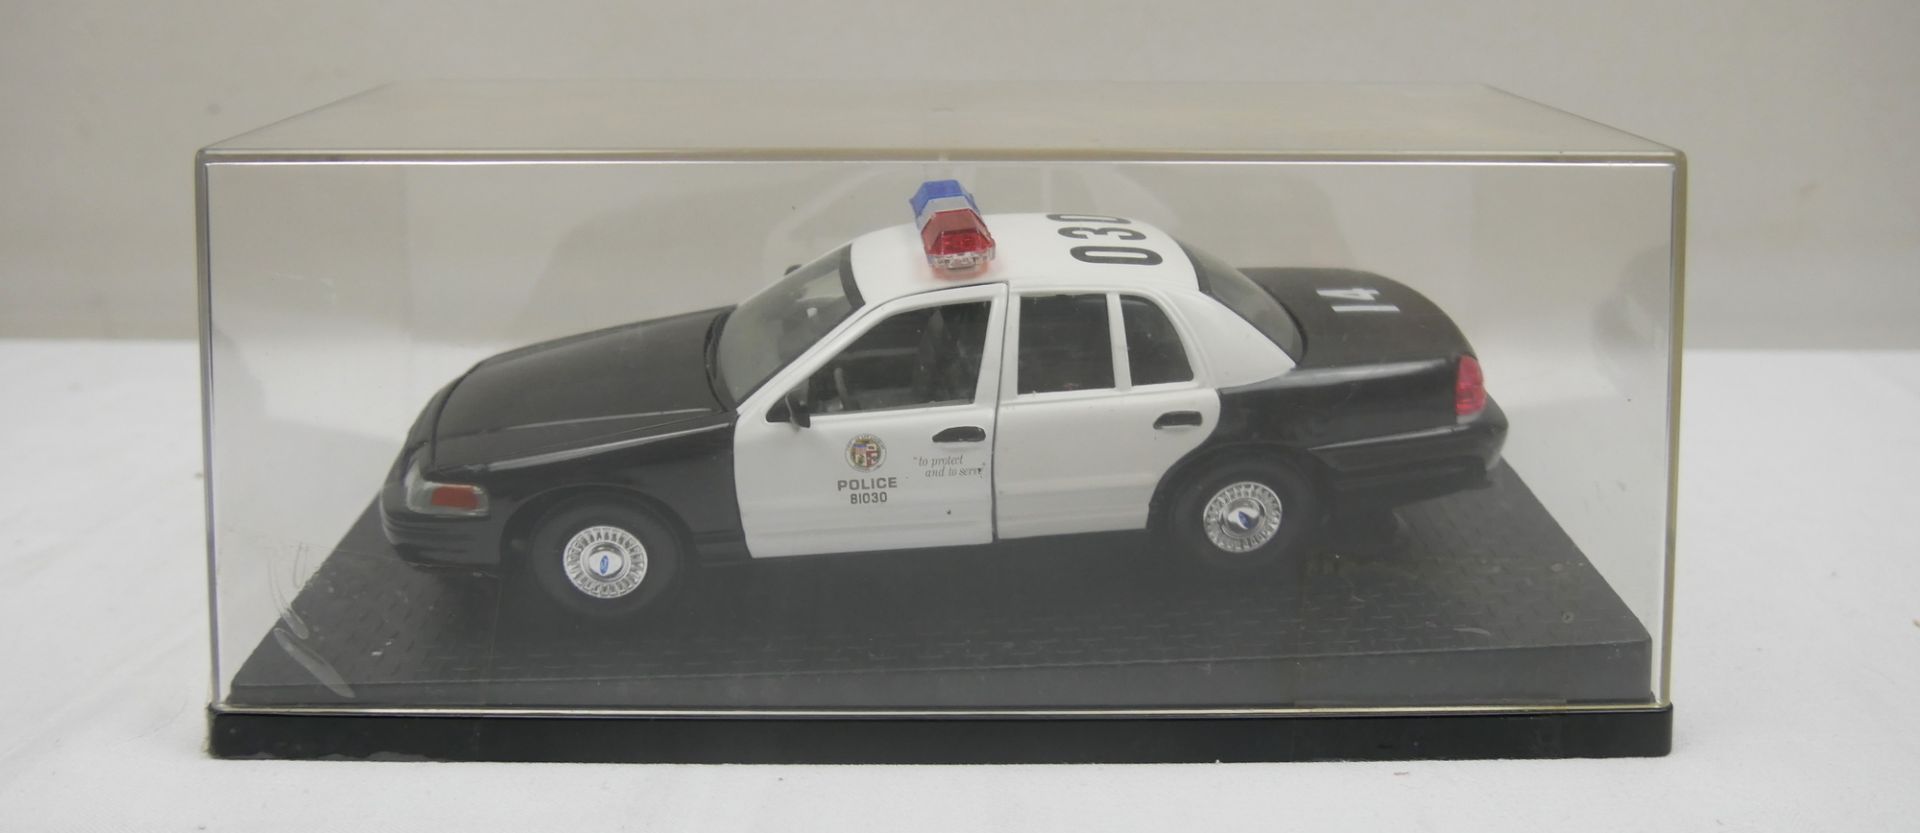 Aus Sammelauflösung! Modellauto "Police 81030" 1:18 im Schaukasten (dieser teilweise beschädigt).